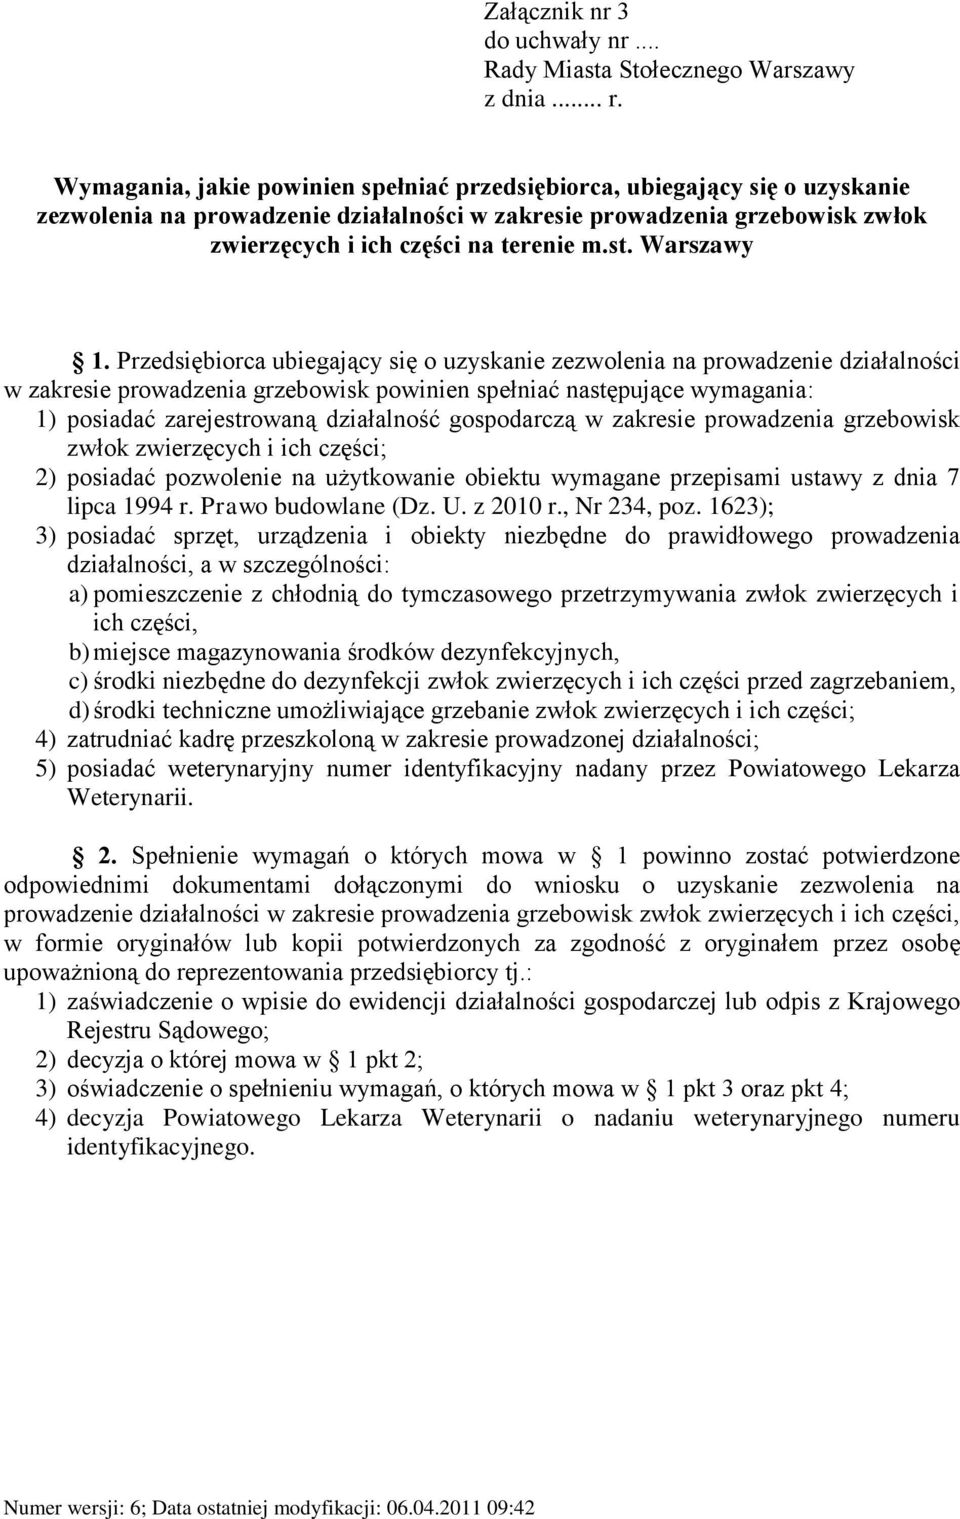 Warszawy w zakresie prowadzenia grzebowisk powinien spełniać następujące wymagania: 1) posiadać zarejestrowaną działalność gospodarczą w zakresie prowadzenia grzebowisk zwłok zwierzęcych i ich